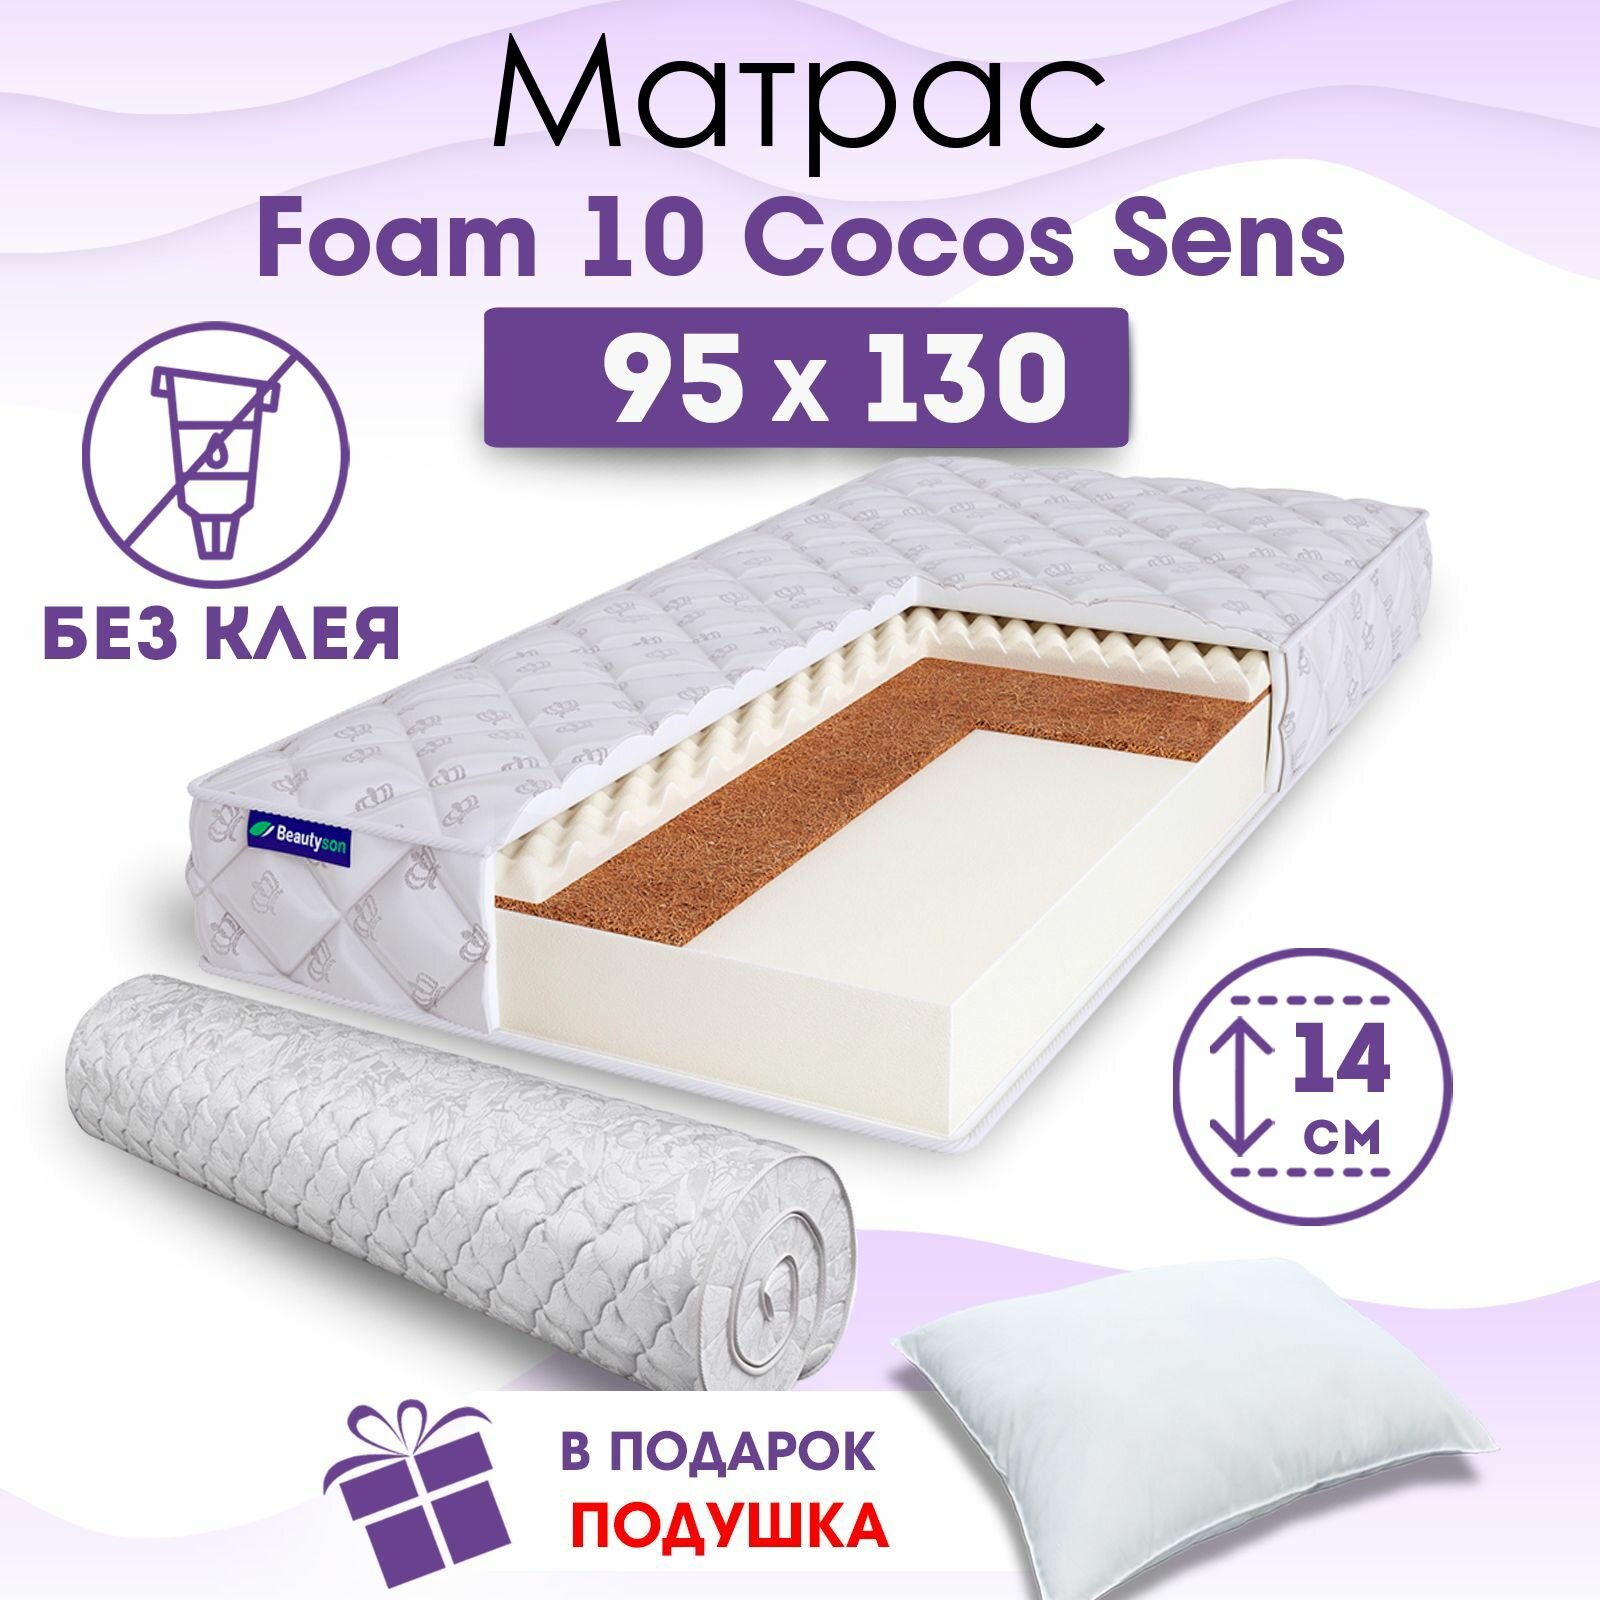 Ортопедический матрас Beautyson Foam 10 Cocos Sens без клея, 95х130, 14 см, беспружинный, односпальный, на кровать, для дивана, умеренно мягкий